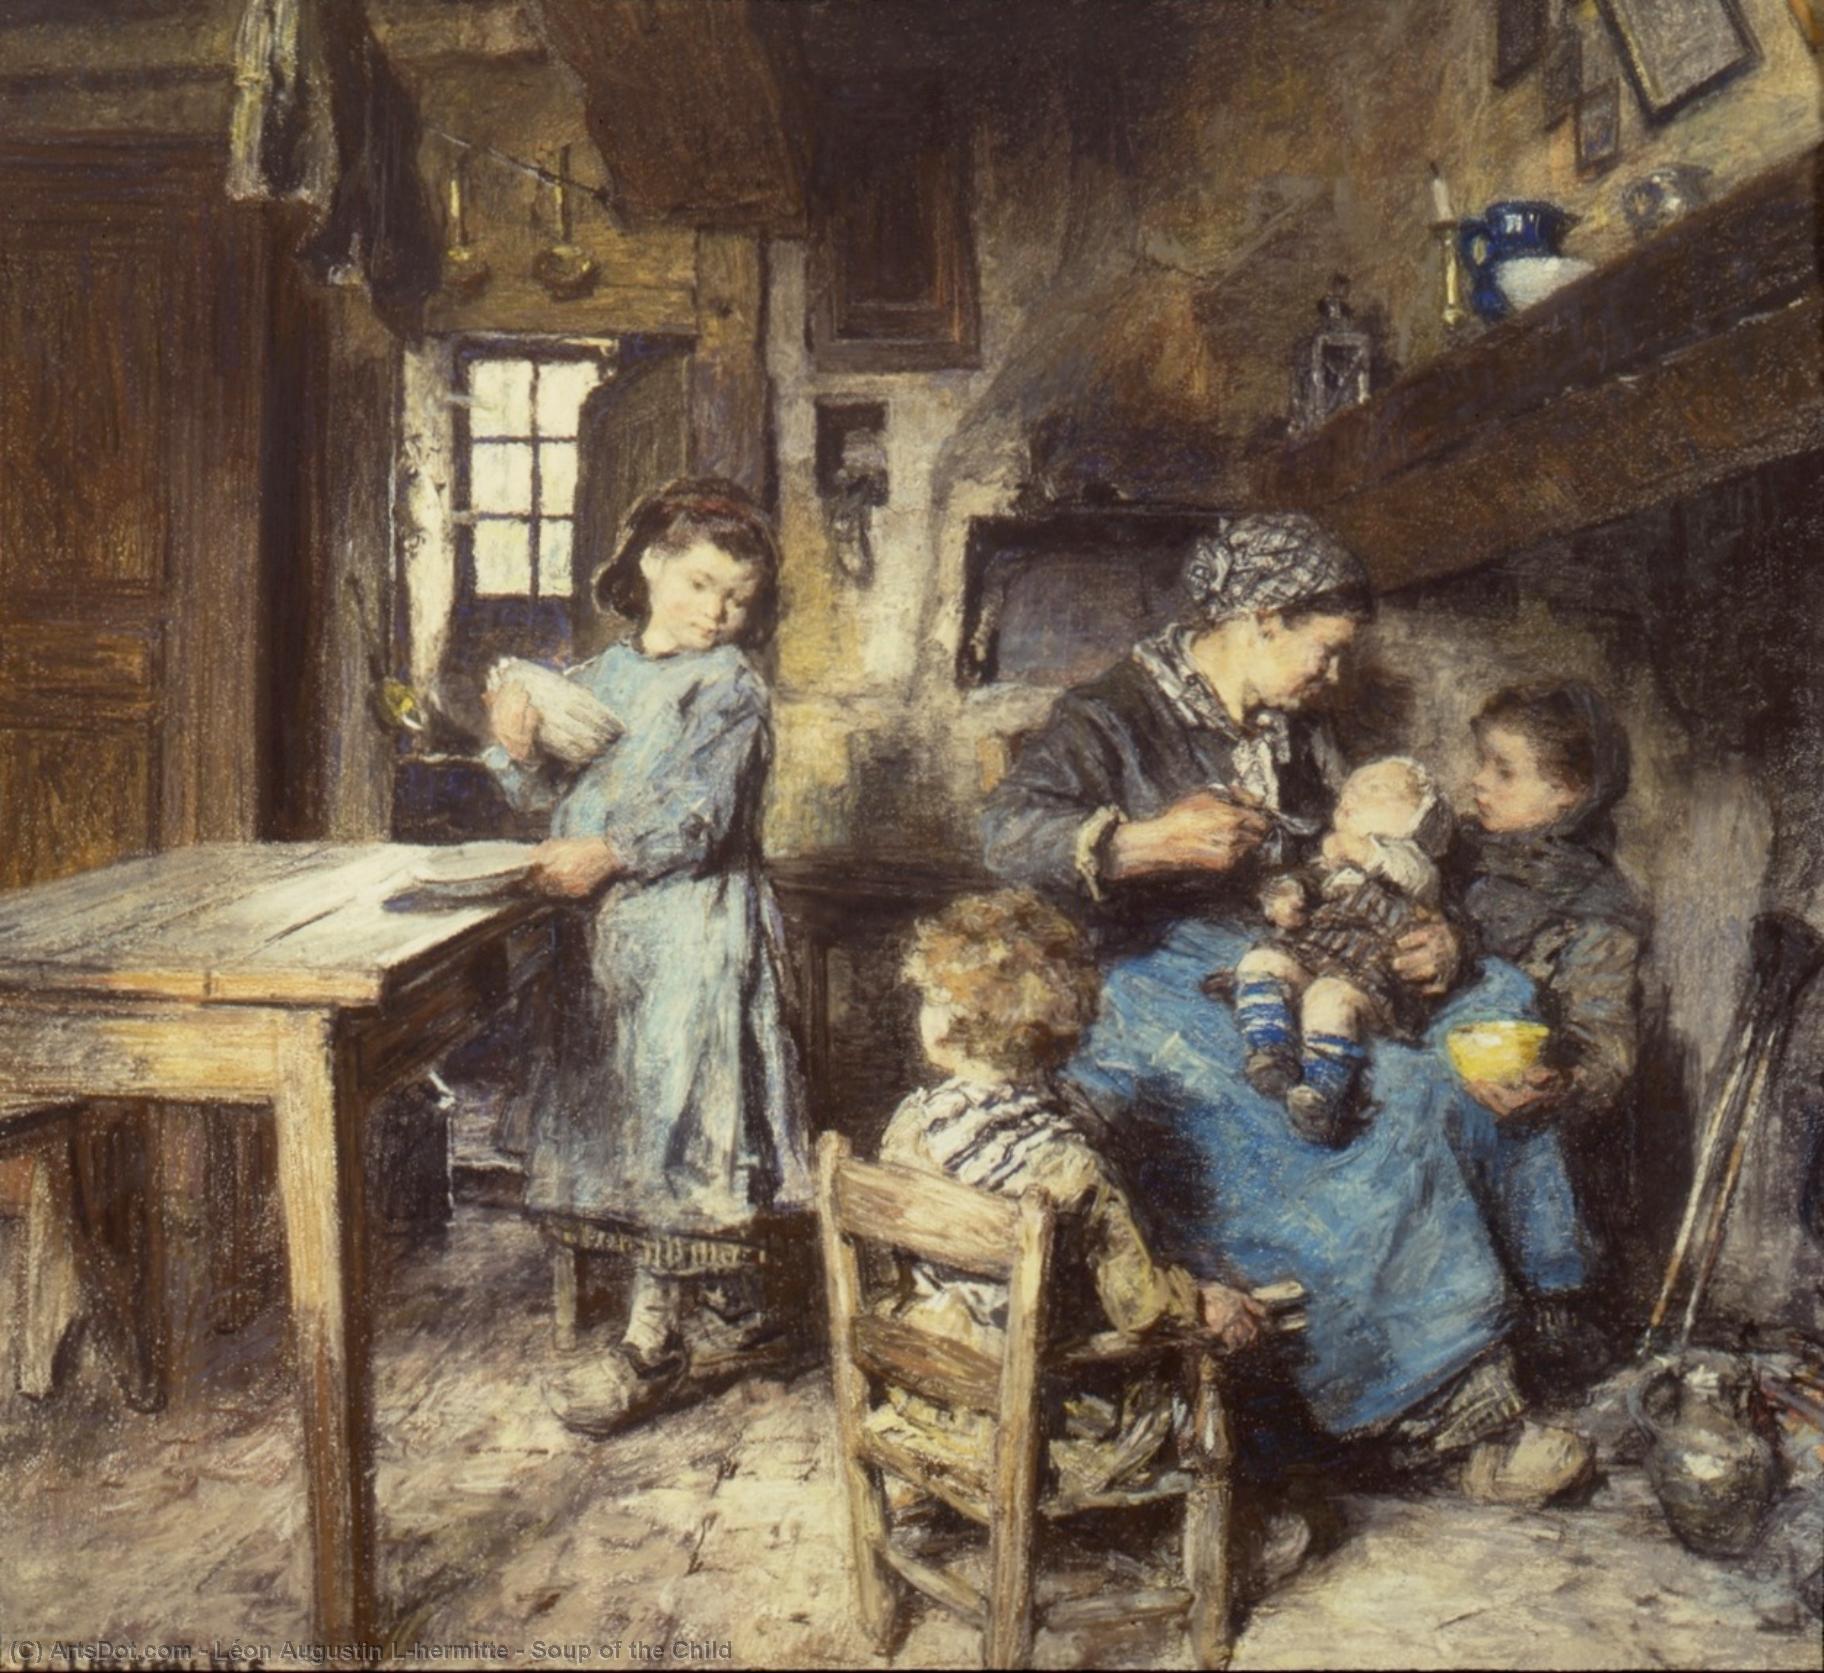 Wikioo.org - Bách khoa toàn thư về mỹ thuật - Vẽ tranh, Tác phẩm nghệ thuật Léon Augustin L'hermitte - Soup of the Child